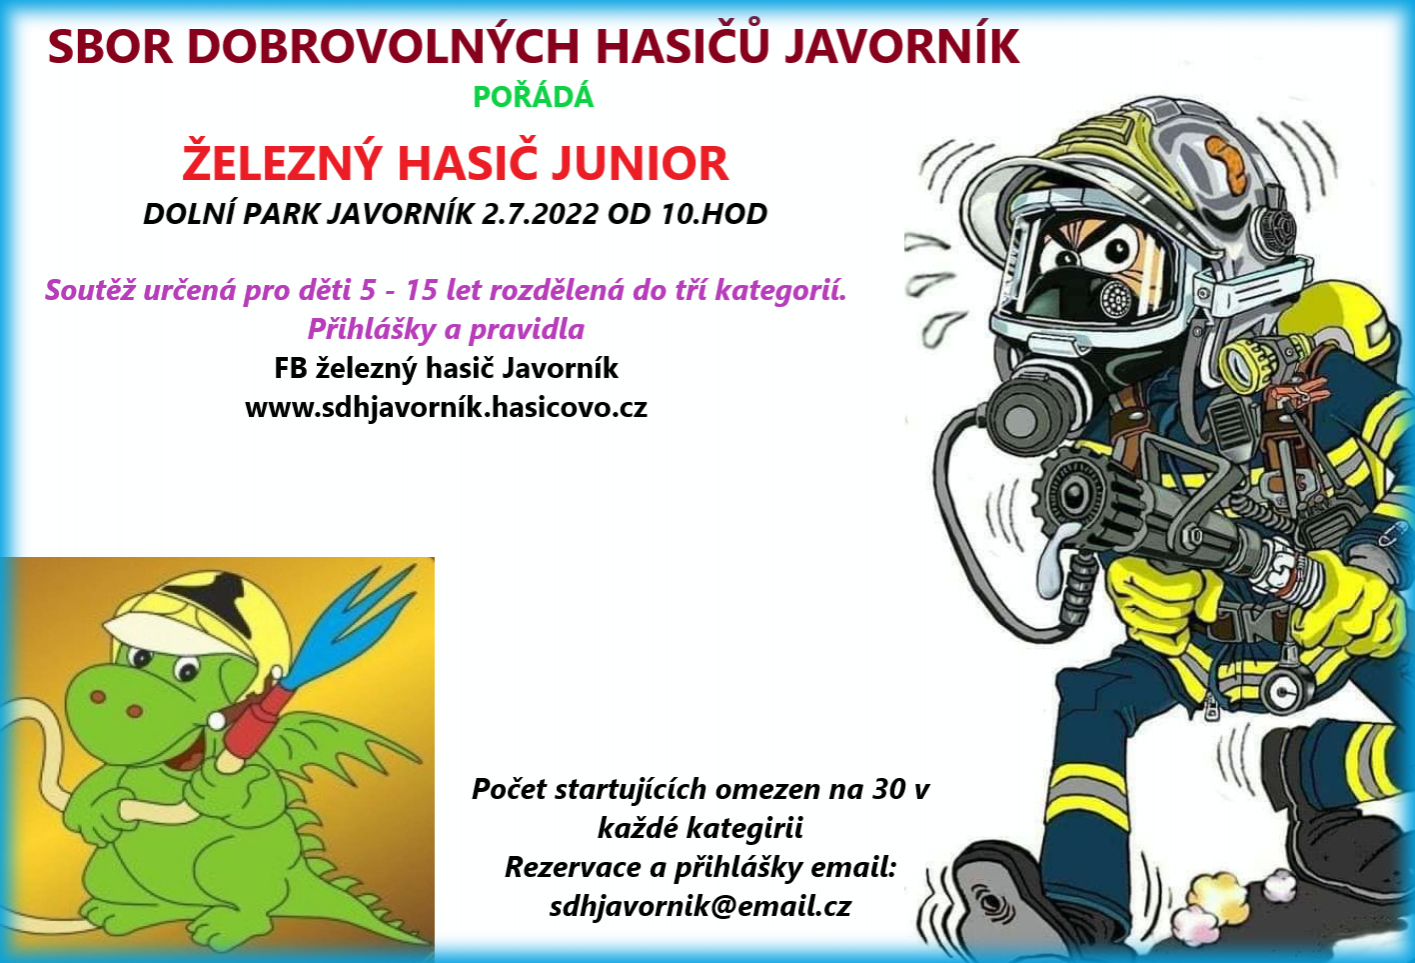 Junior hasic22